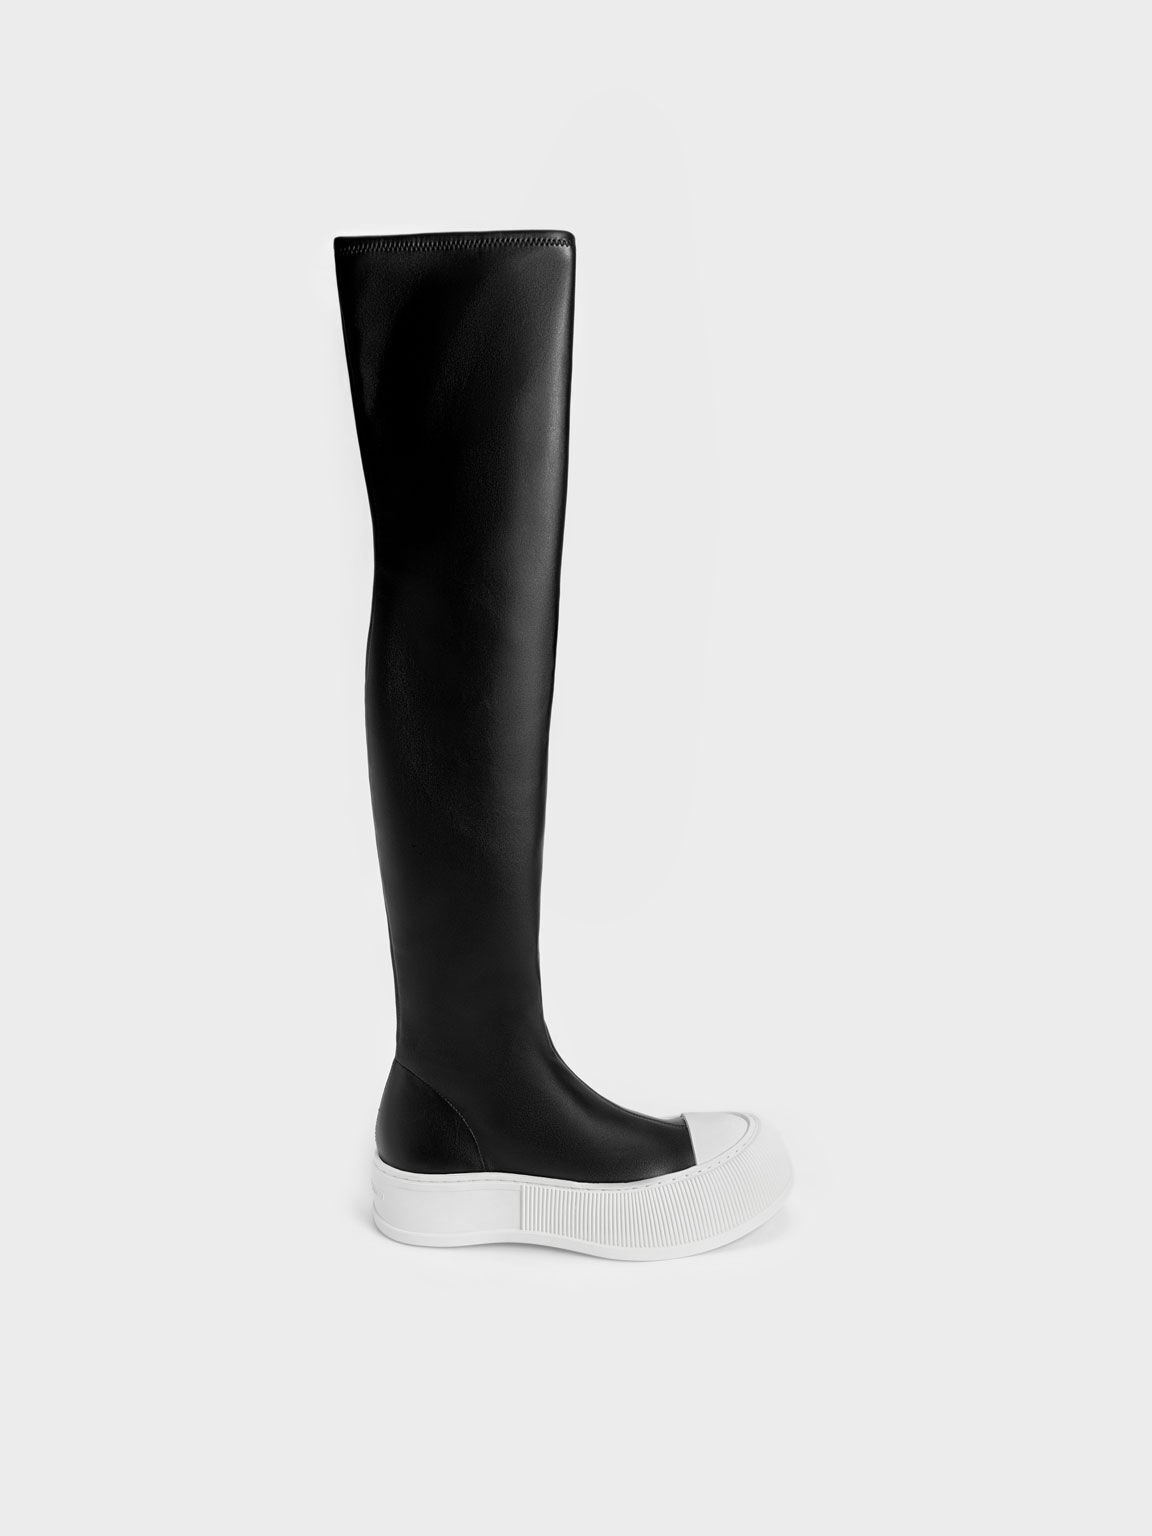 Harrianna Thigh-High Boots, Black, hi-res